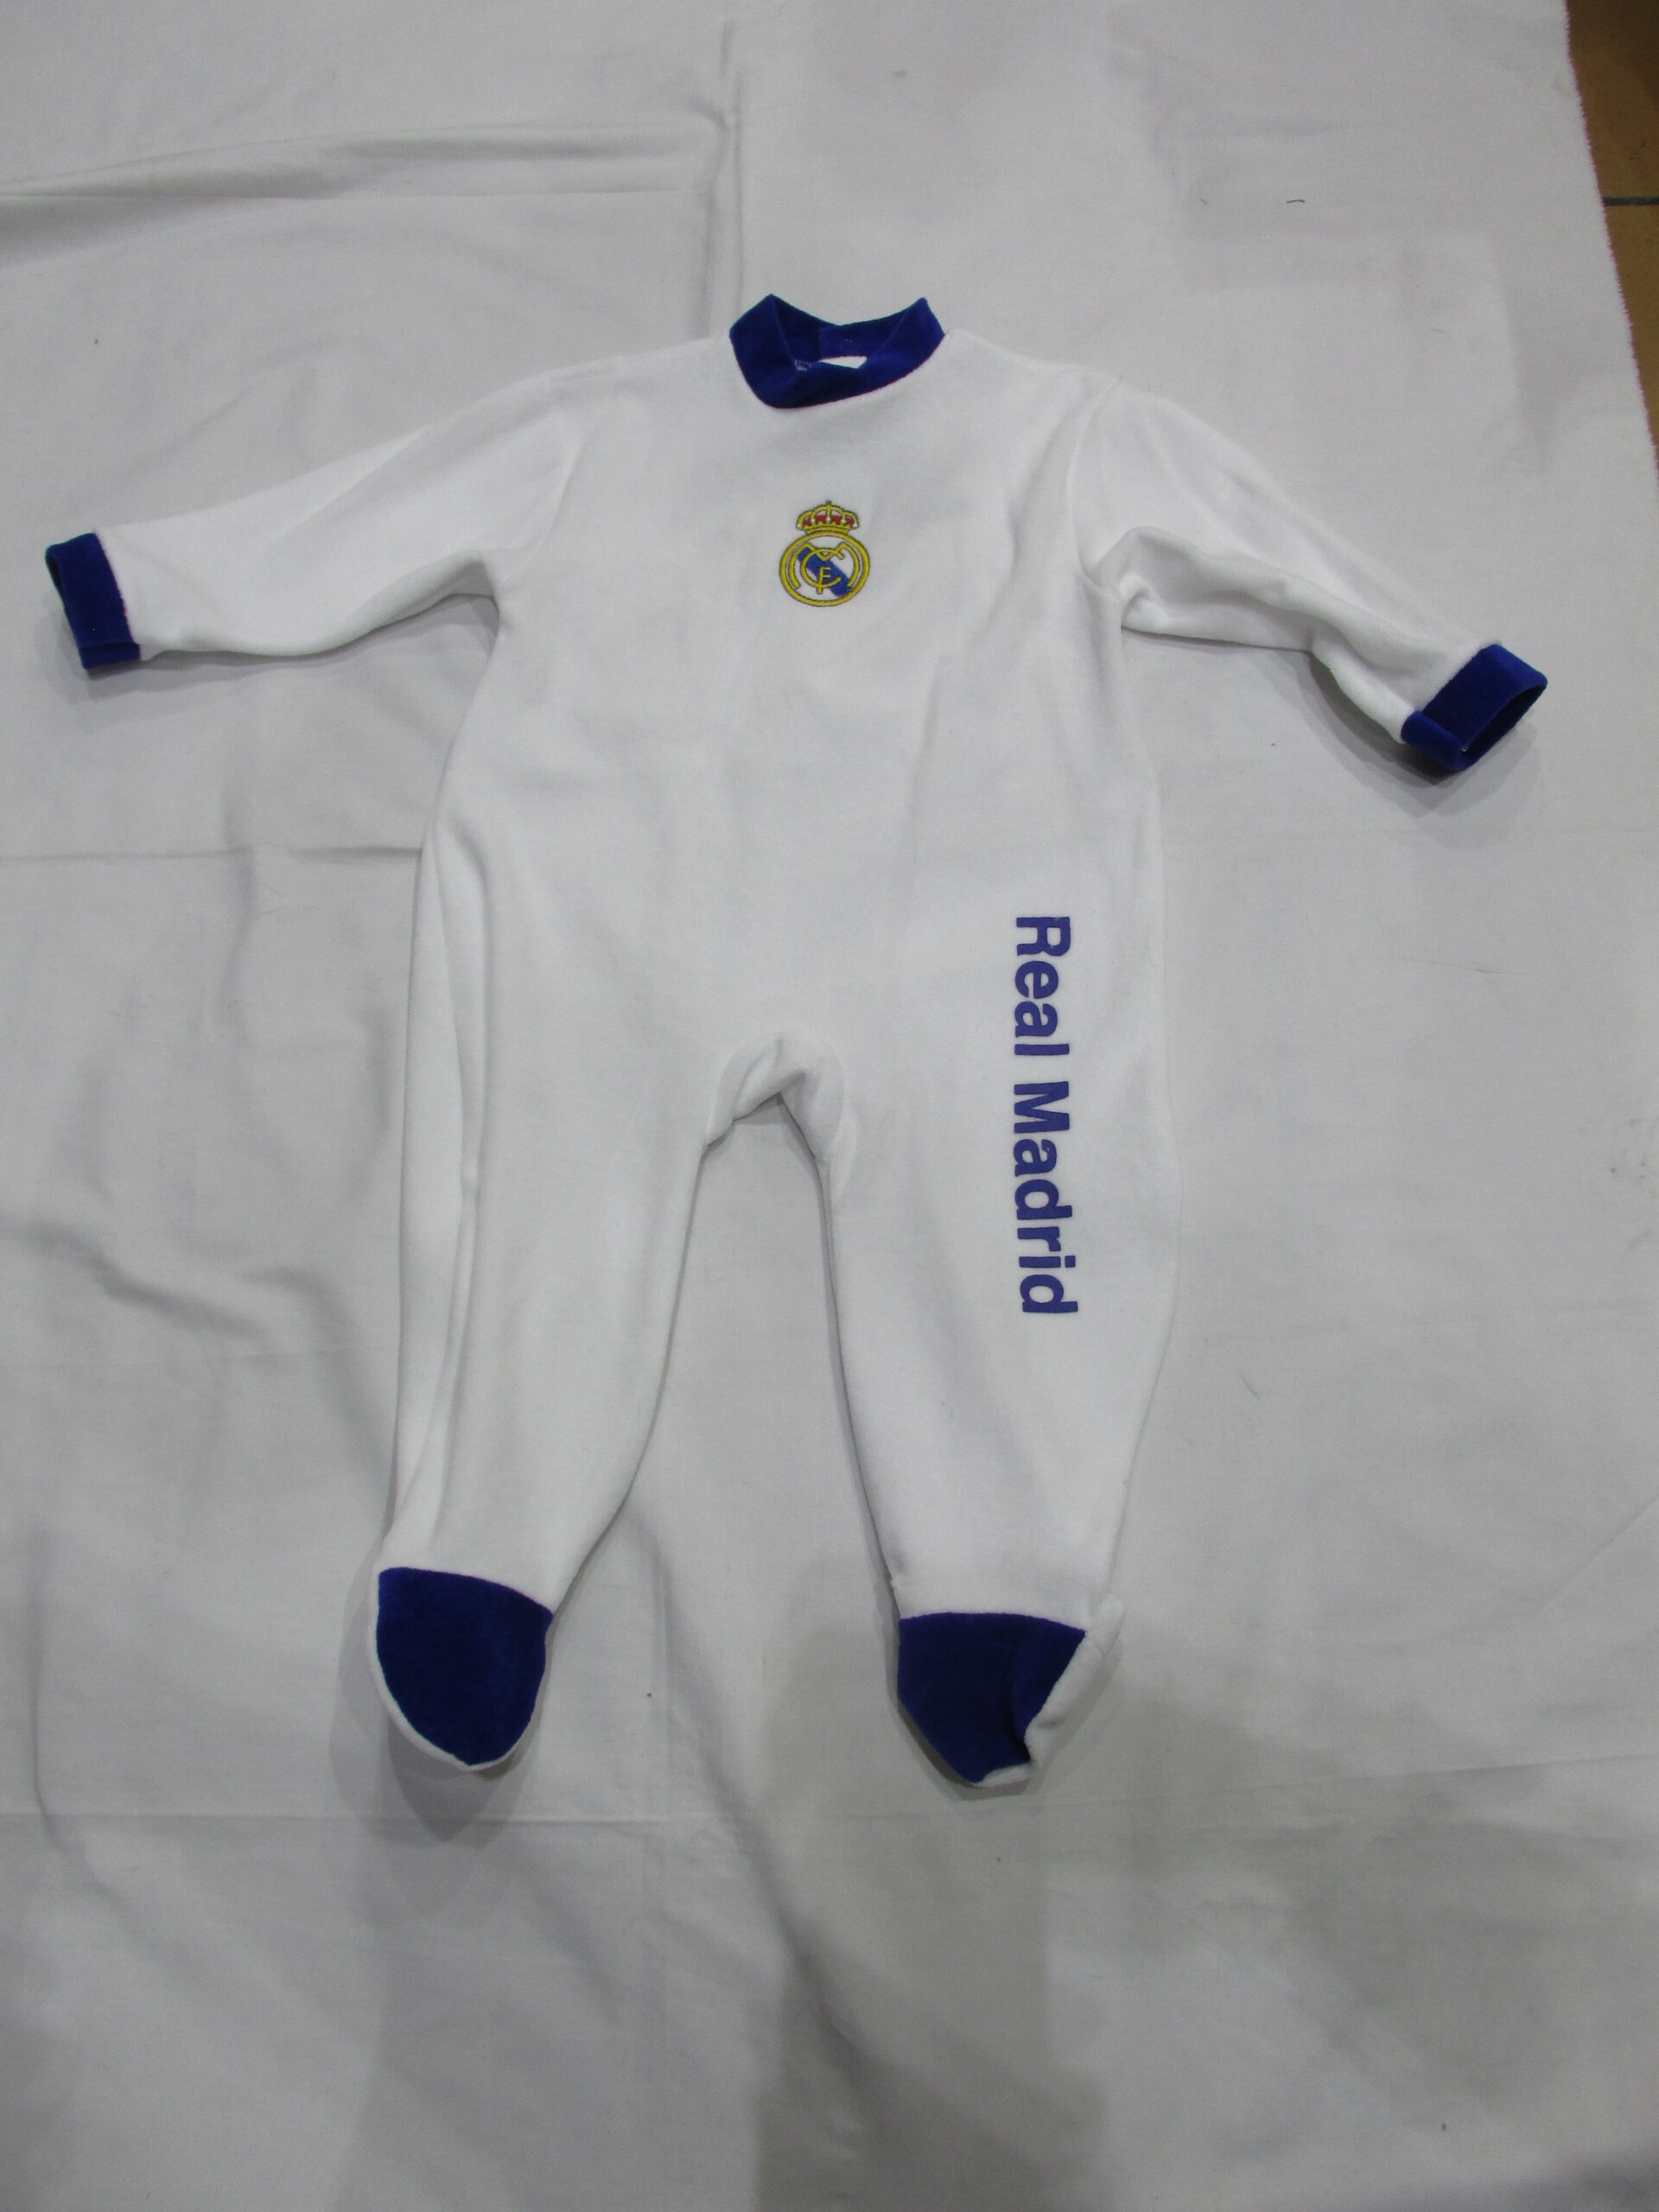 Pelele Real Madrid para bebé rosa